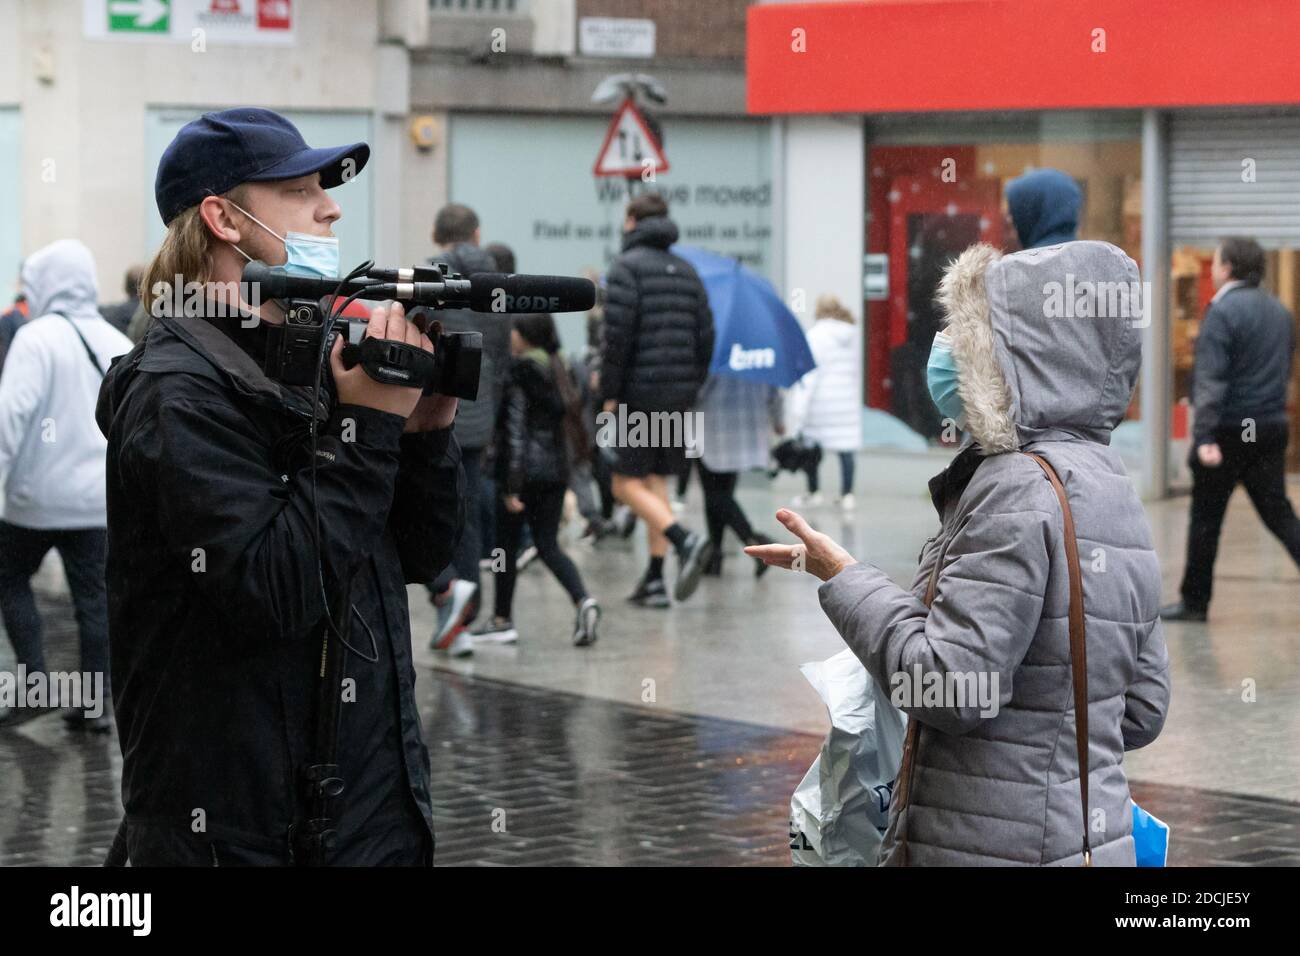 Centre-ville de Liverpool, 21 novembre 2020 : une femme est interviewée sous la pluie par un journaliste lors d'une marche de protestation anti-verrouillage Banque D'Images